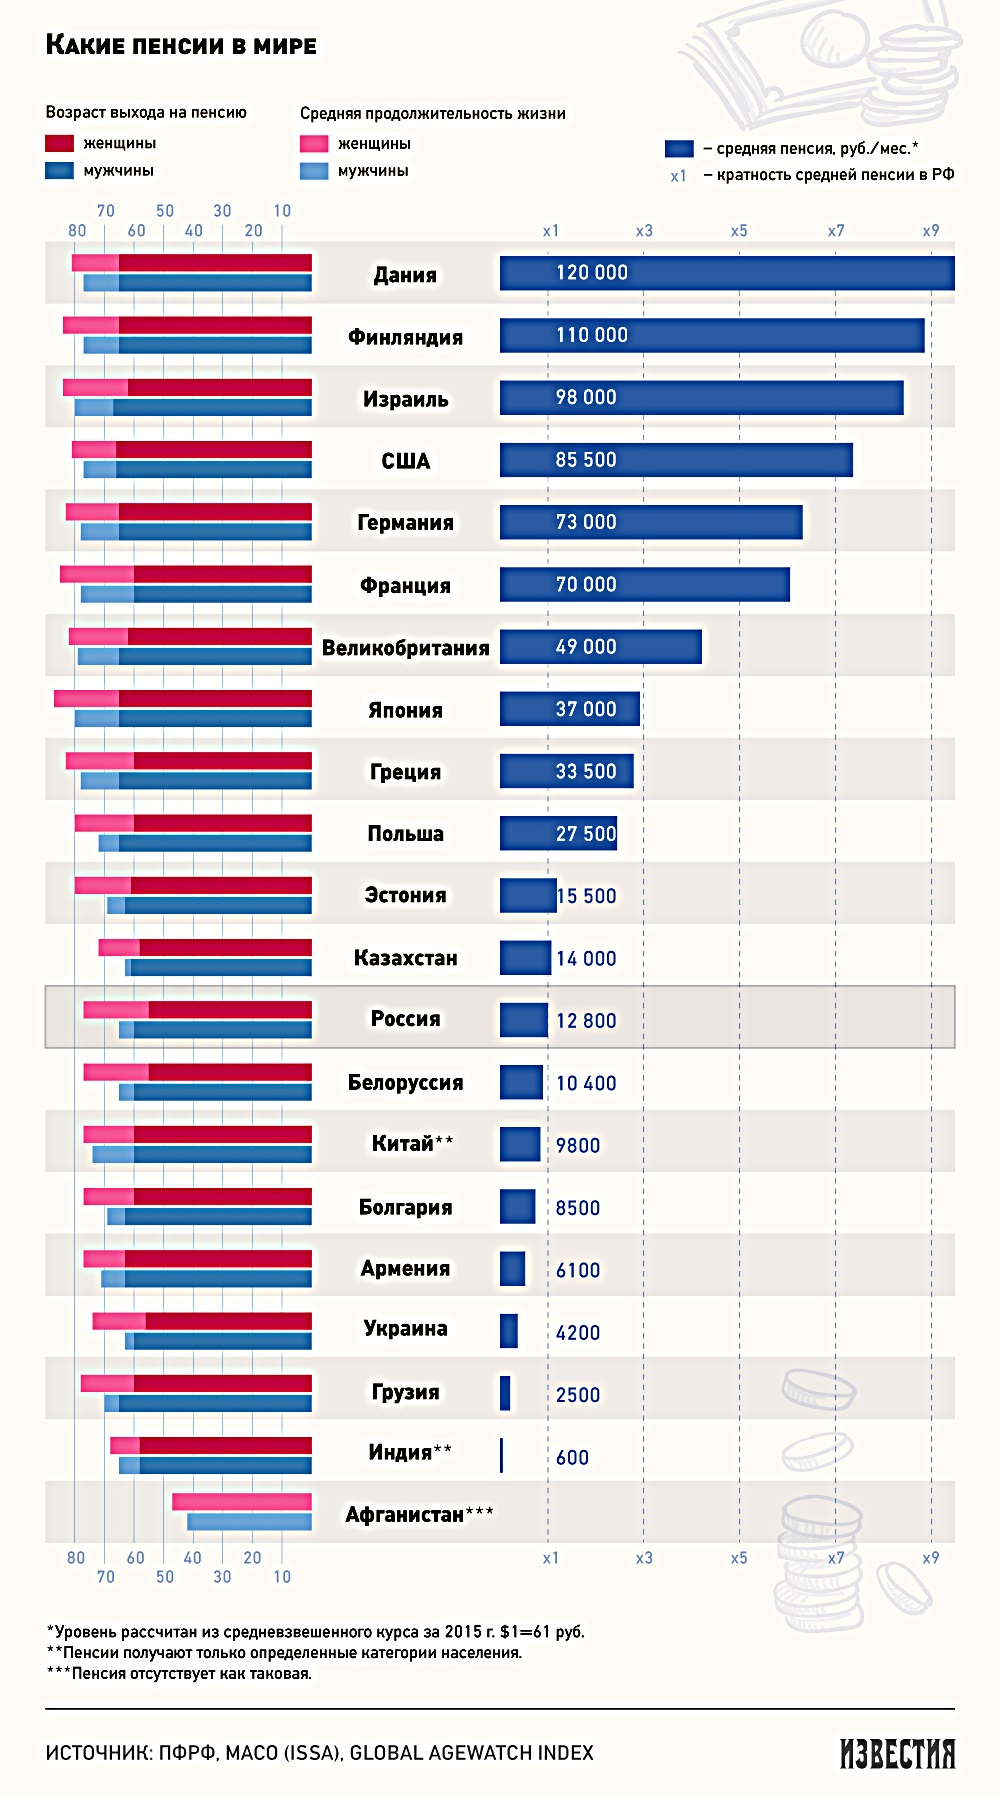 Пенсия в странах европы. Размер пенсии в разных странах.